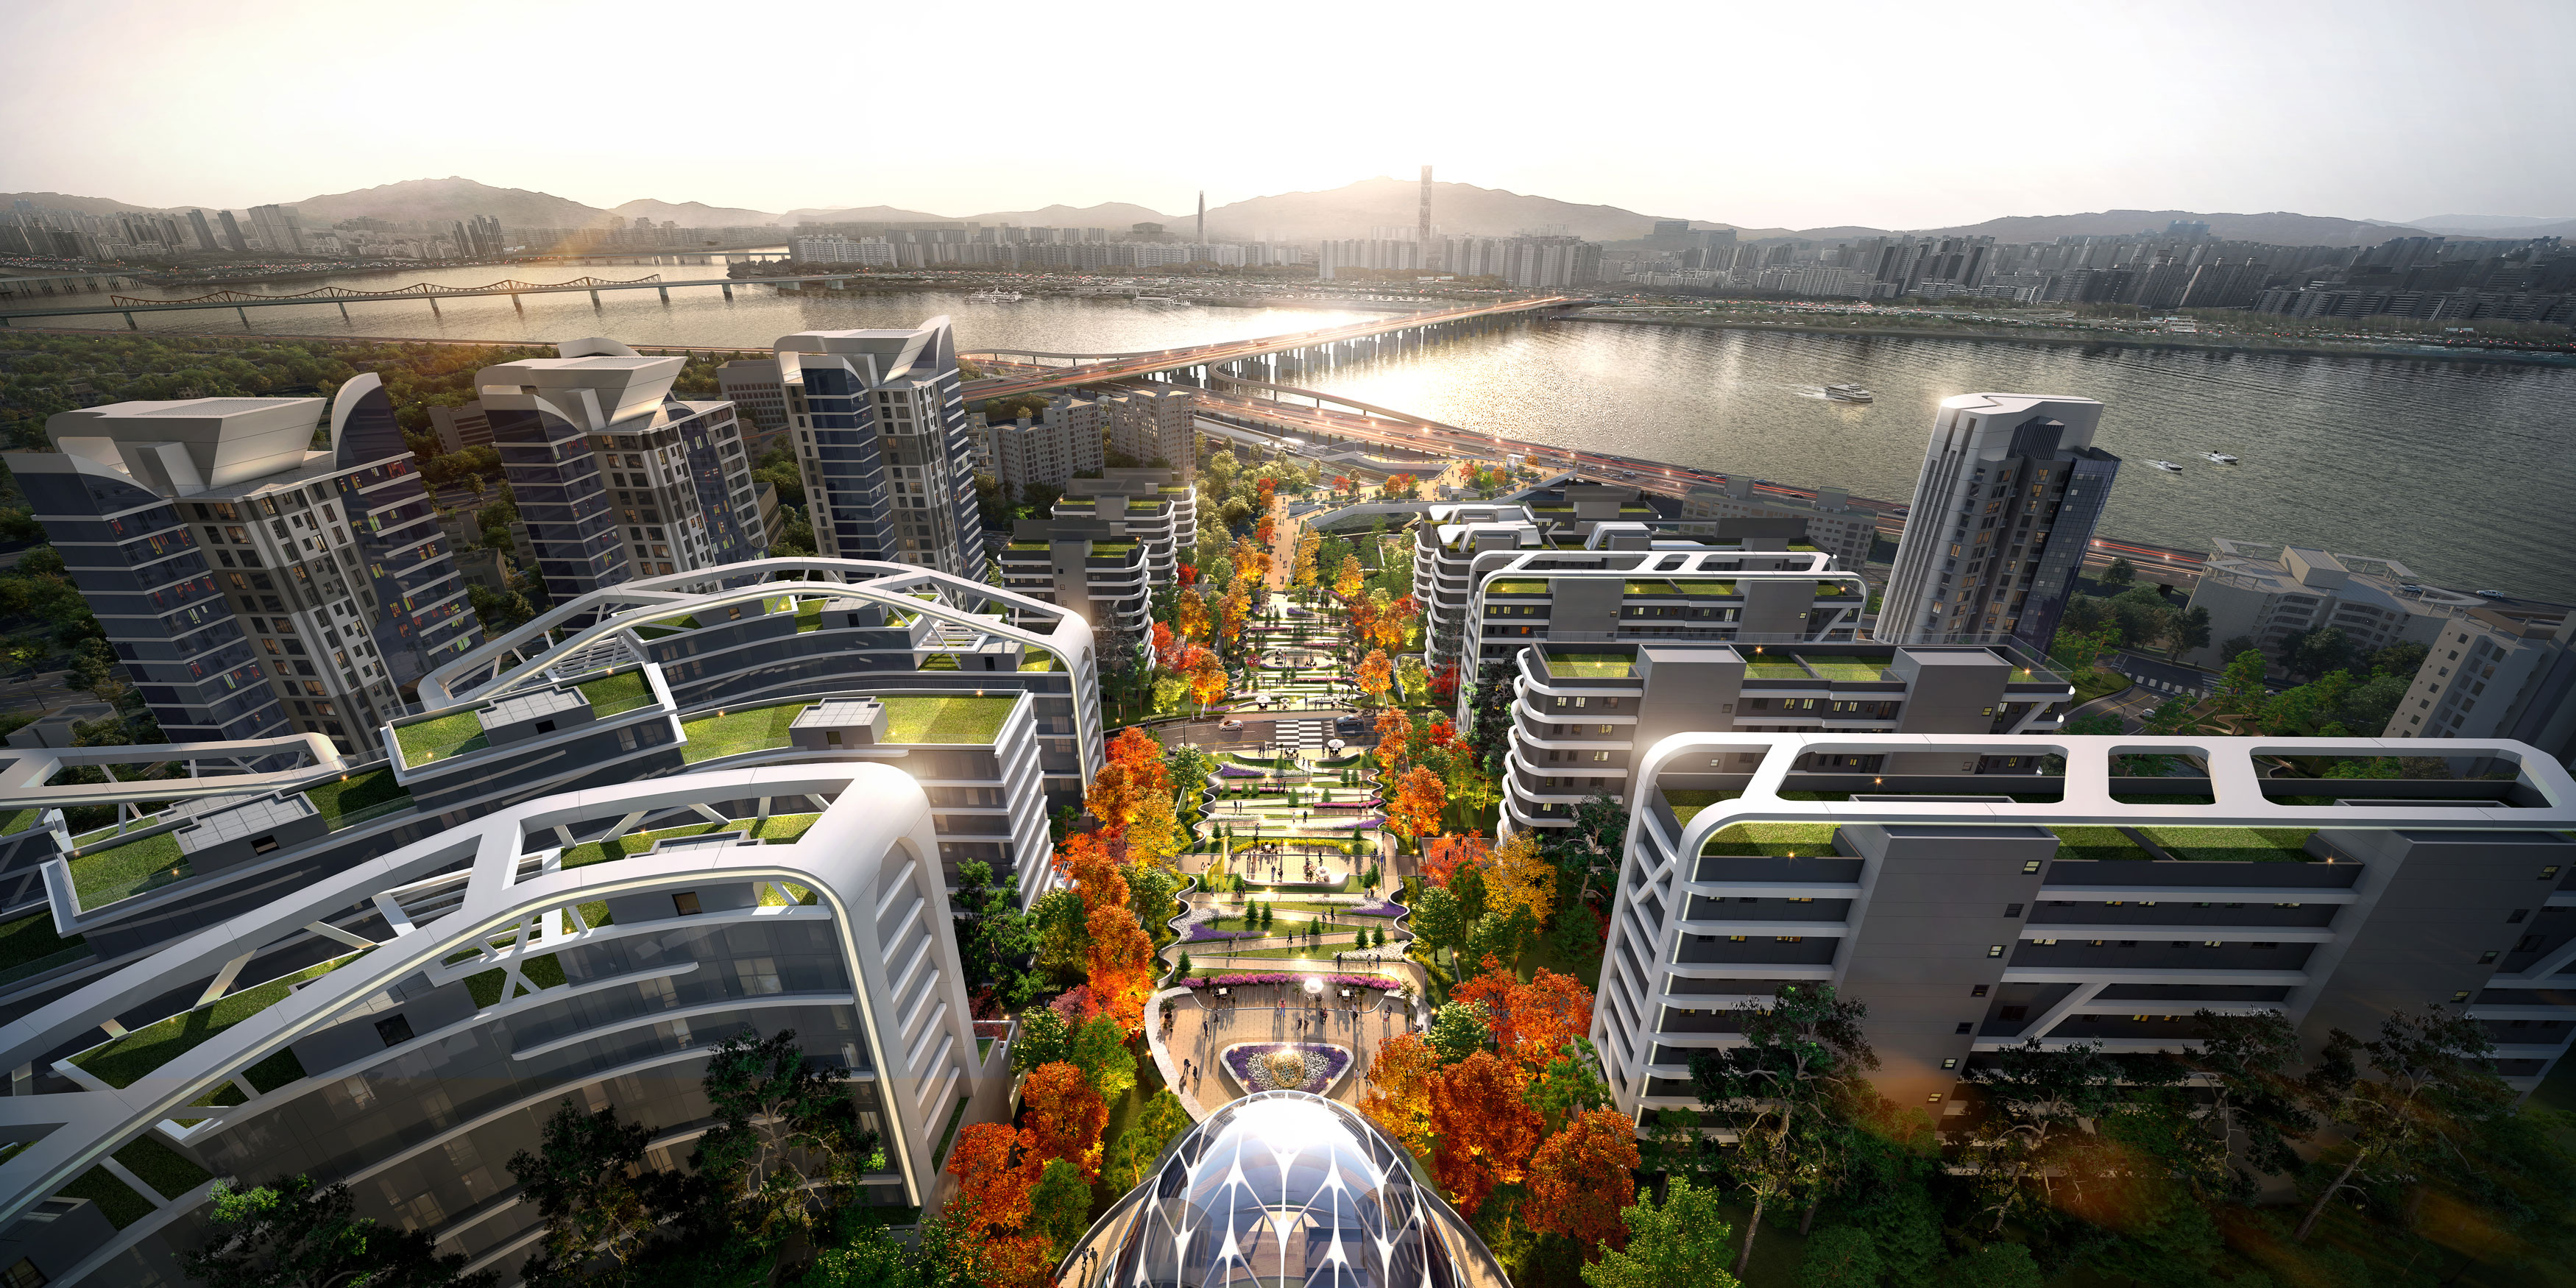 현대건설이 세계적인 건축·설계기업 MVRDV와의 협업을 알린 서울 용산구 한남3재정비촉진구역의 조감도. 현대건설 제공